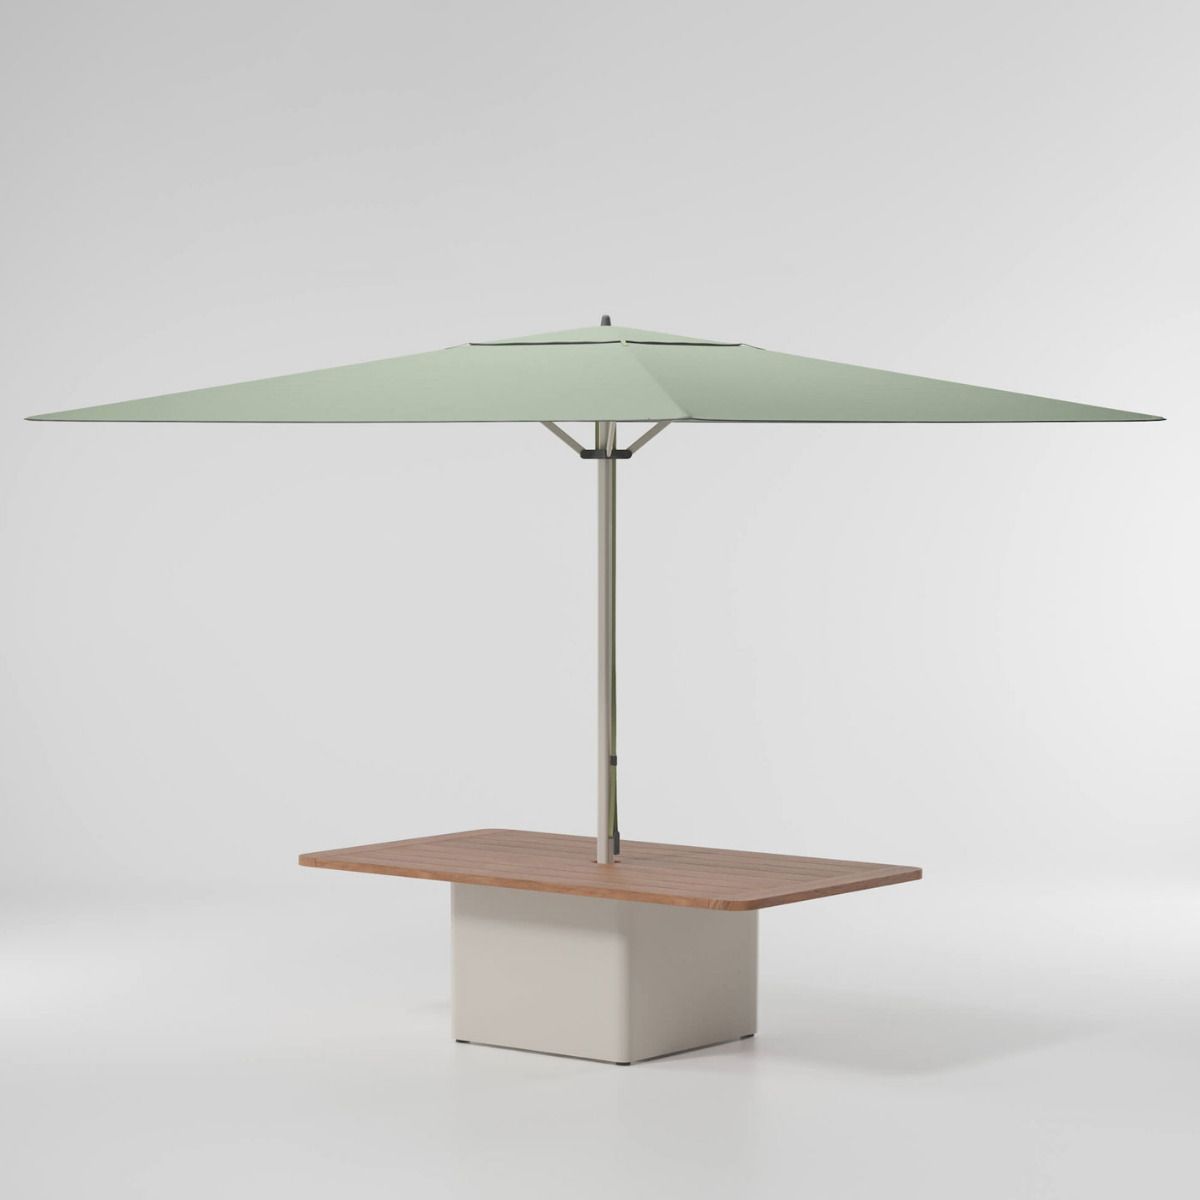 Meteo parasol con base para mesa de centro de acero 